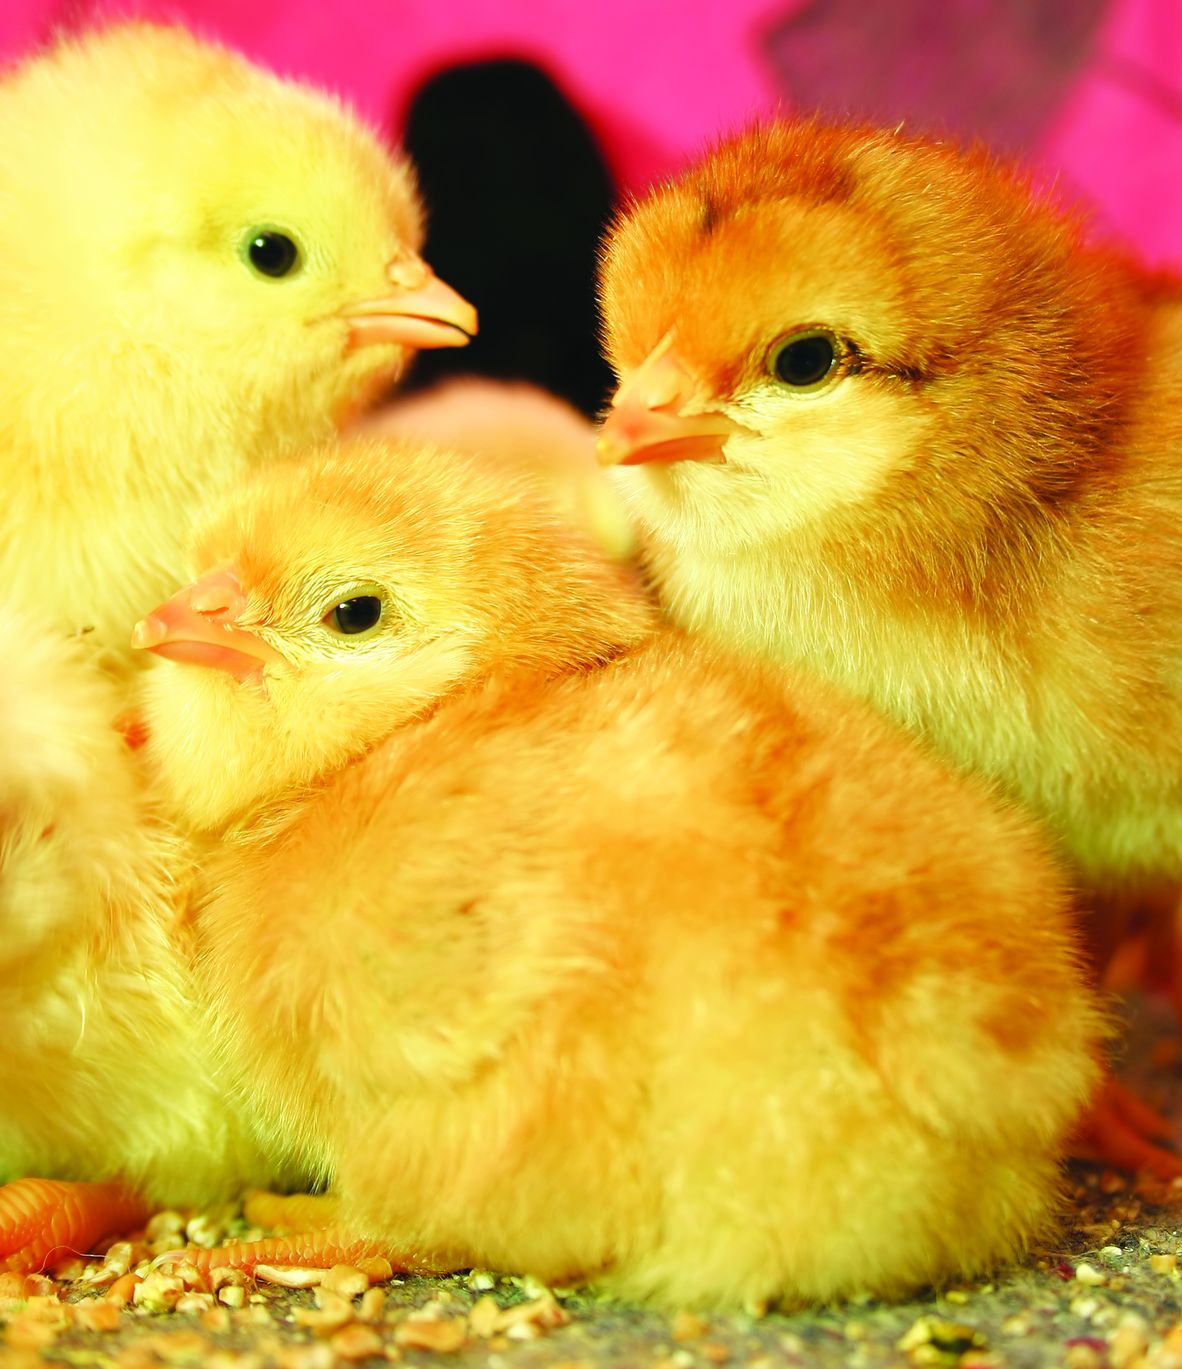 Kurangkan Kadar Kematian Anak Ayam - Agrimag